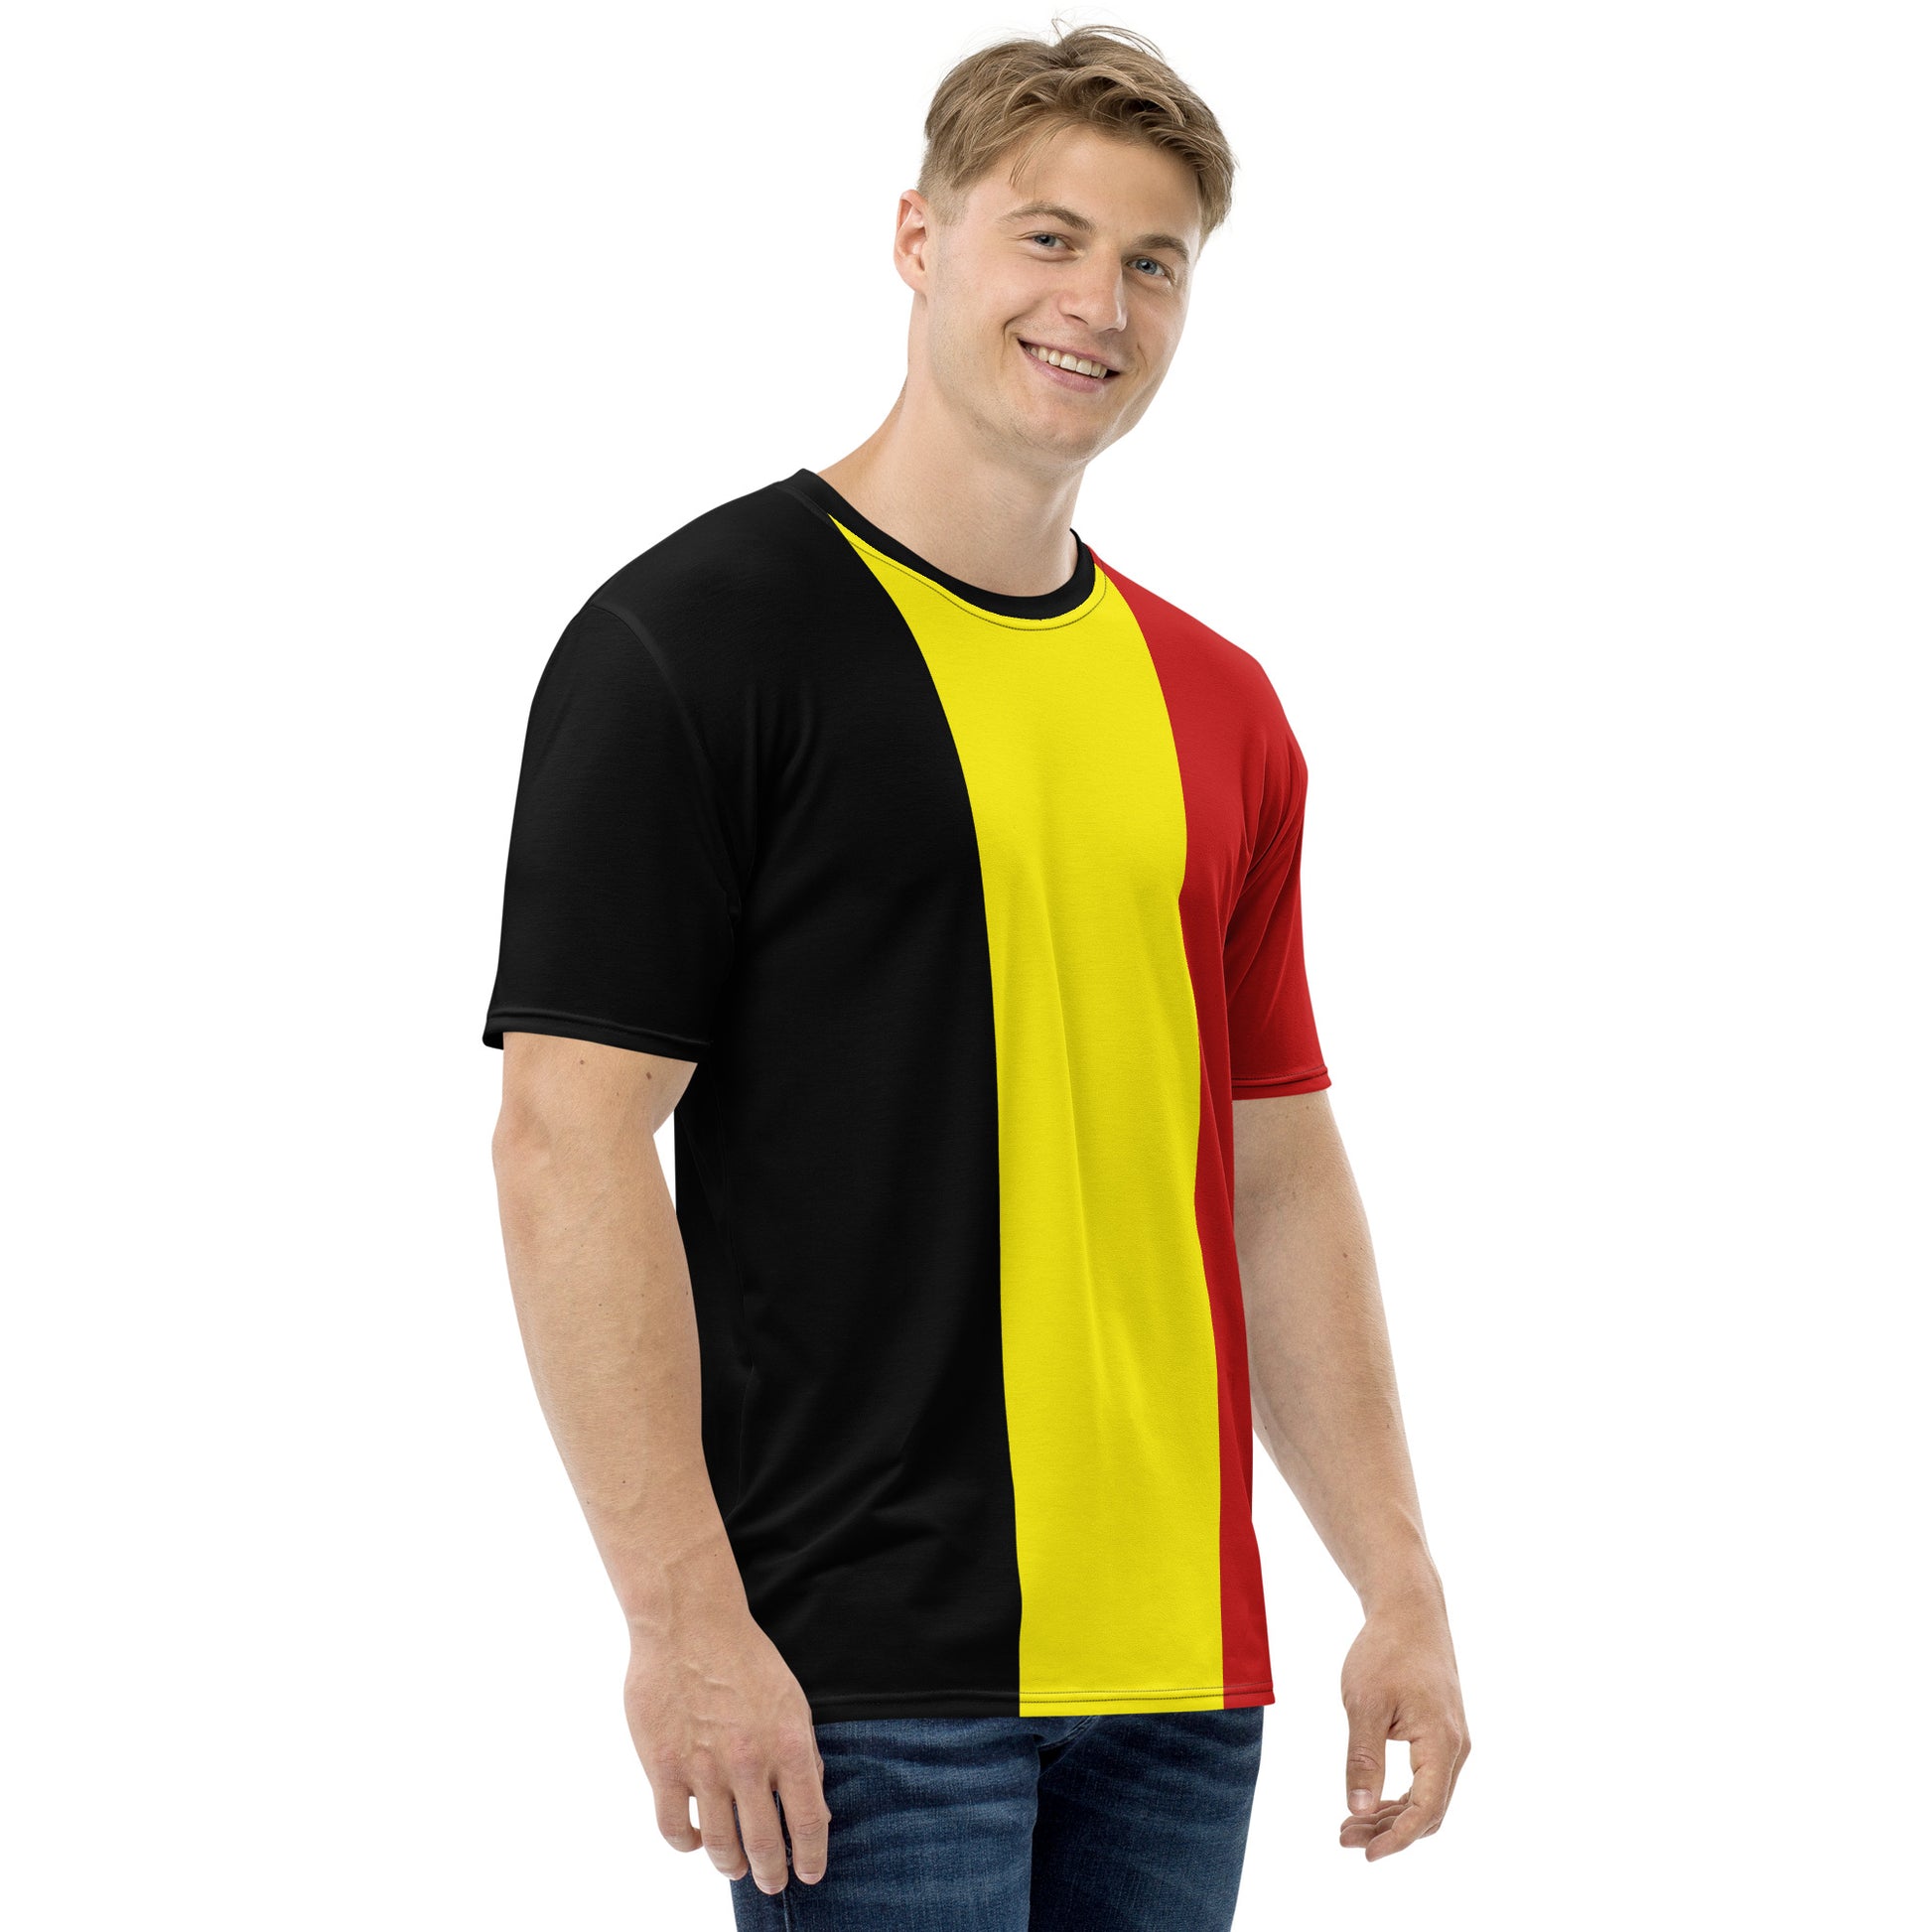 Men's T-shirt with Belgium flag design